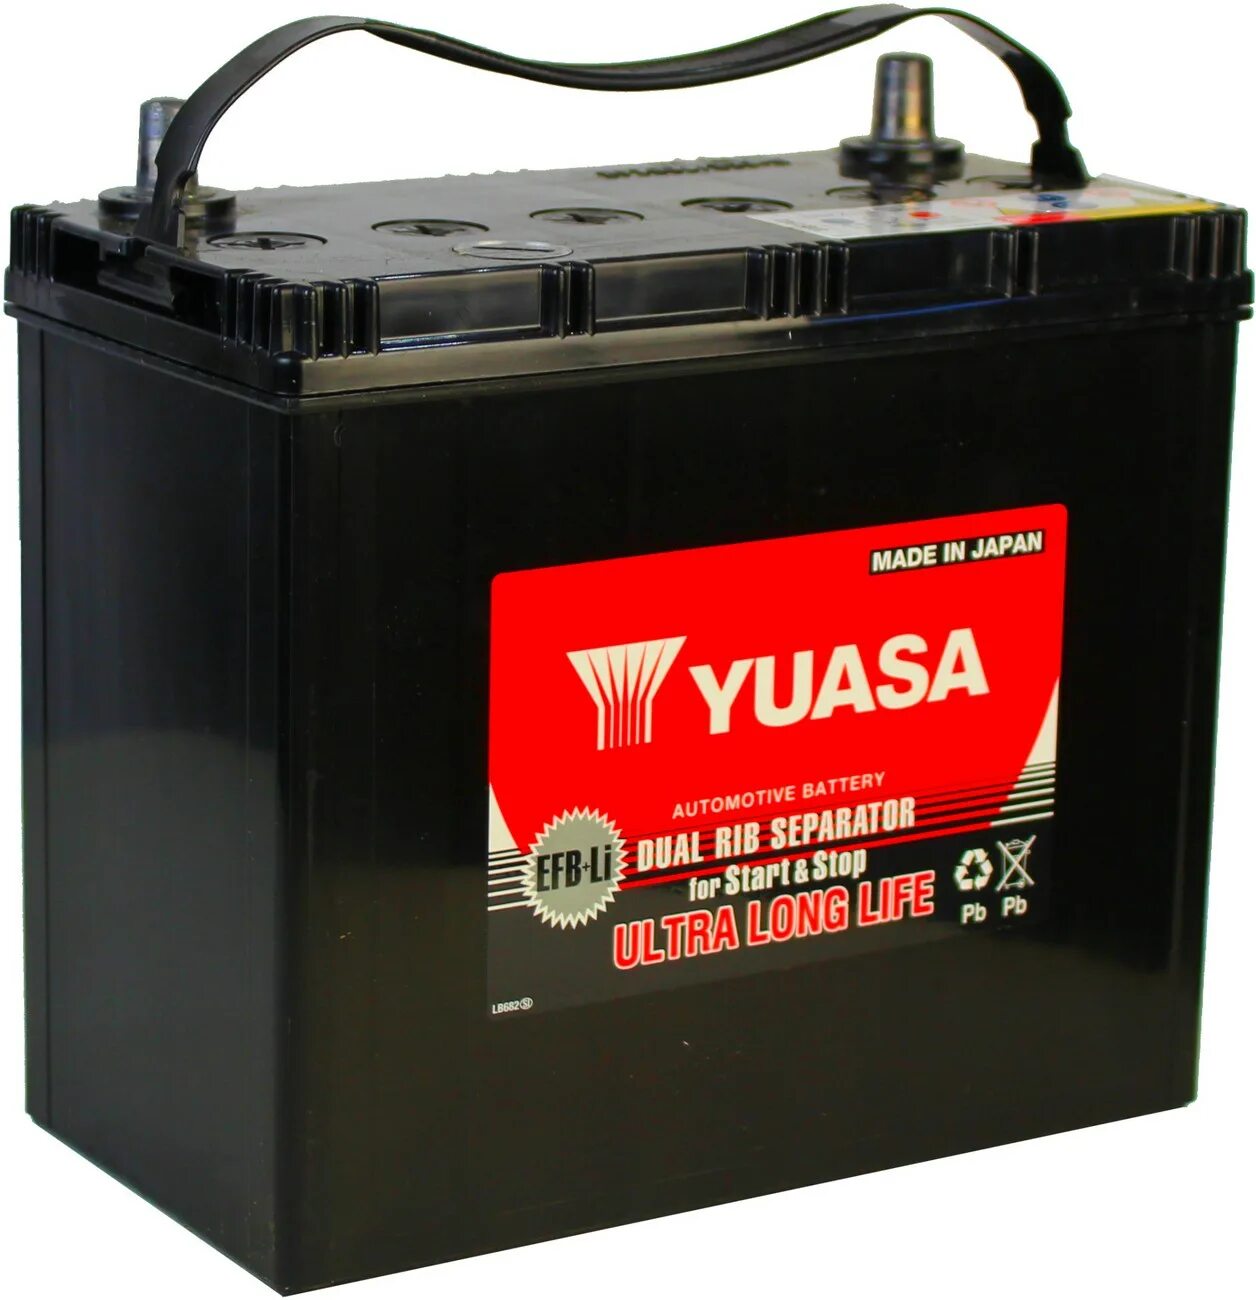 Yuasa аккумуляторы купить. Yuasa MF Black Edition 60b24. GS Yuasa EFB. GS Yuasa аккумулятор. Yuasa AGM Black Edition s34b20r.